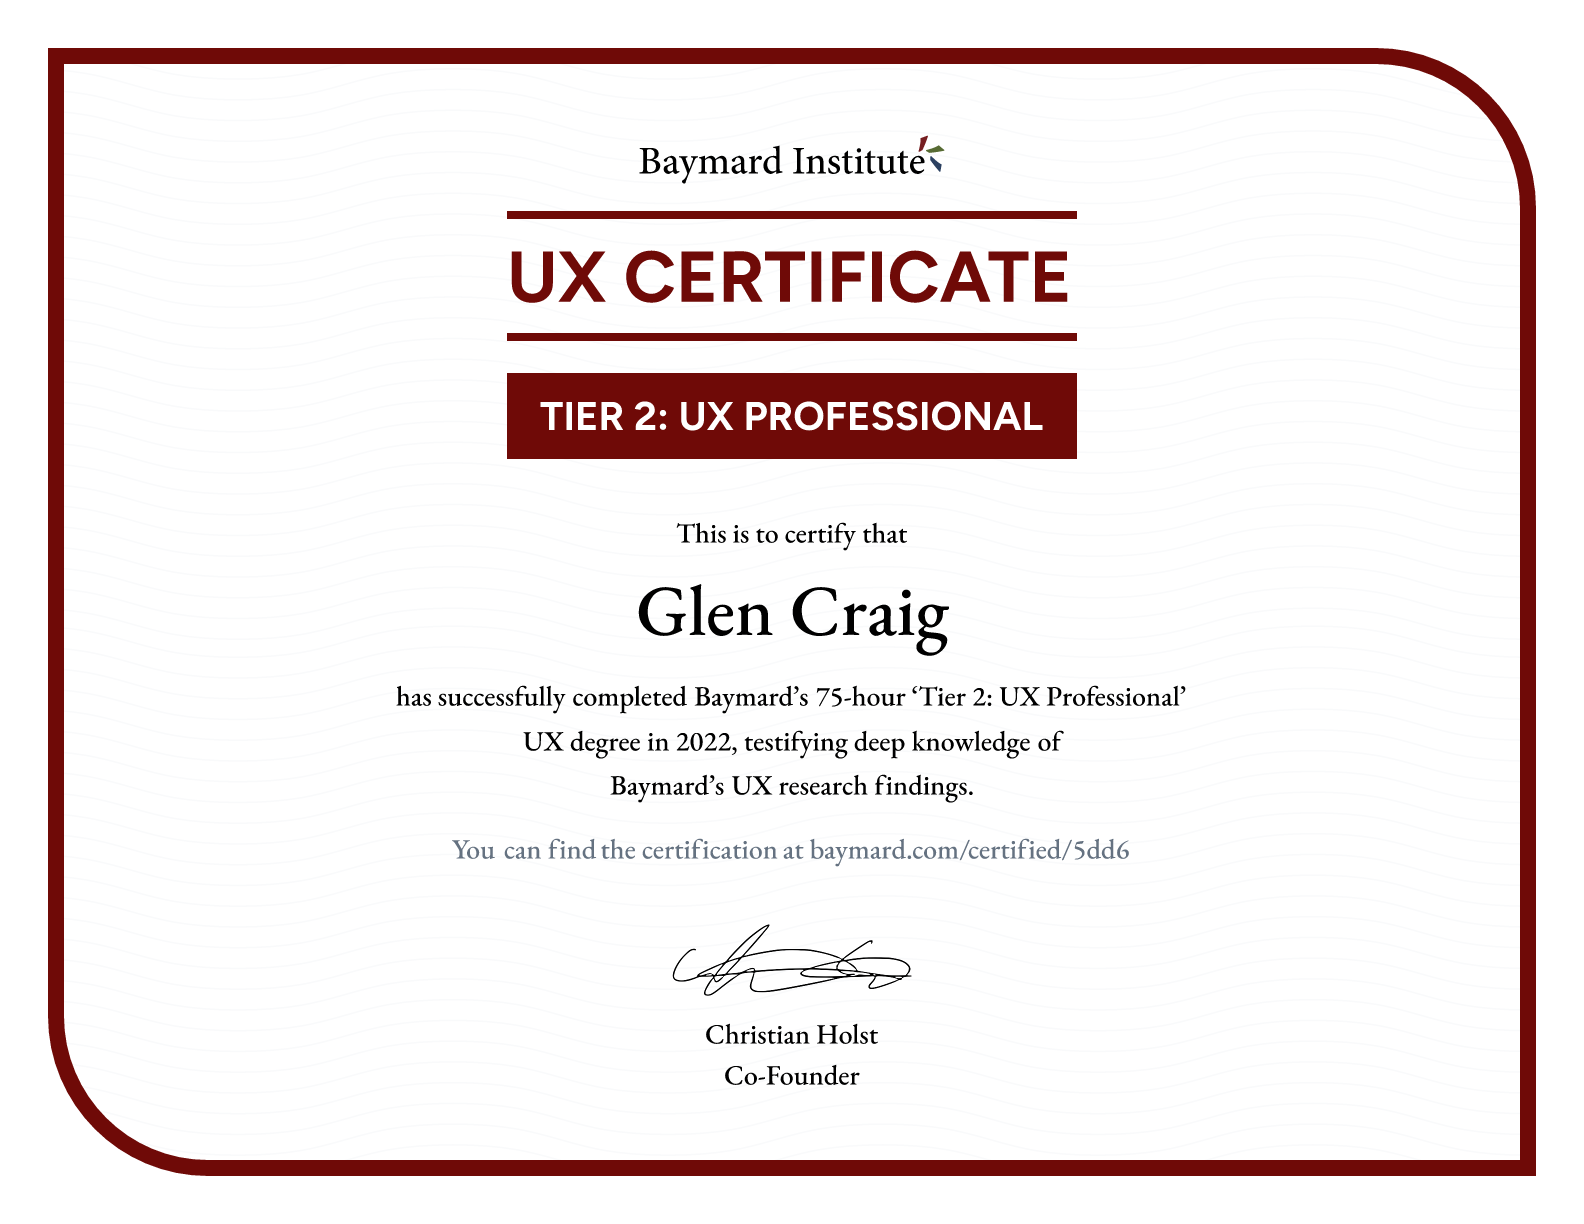 Glen Craig’s certificate